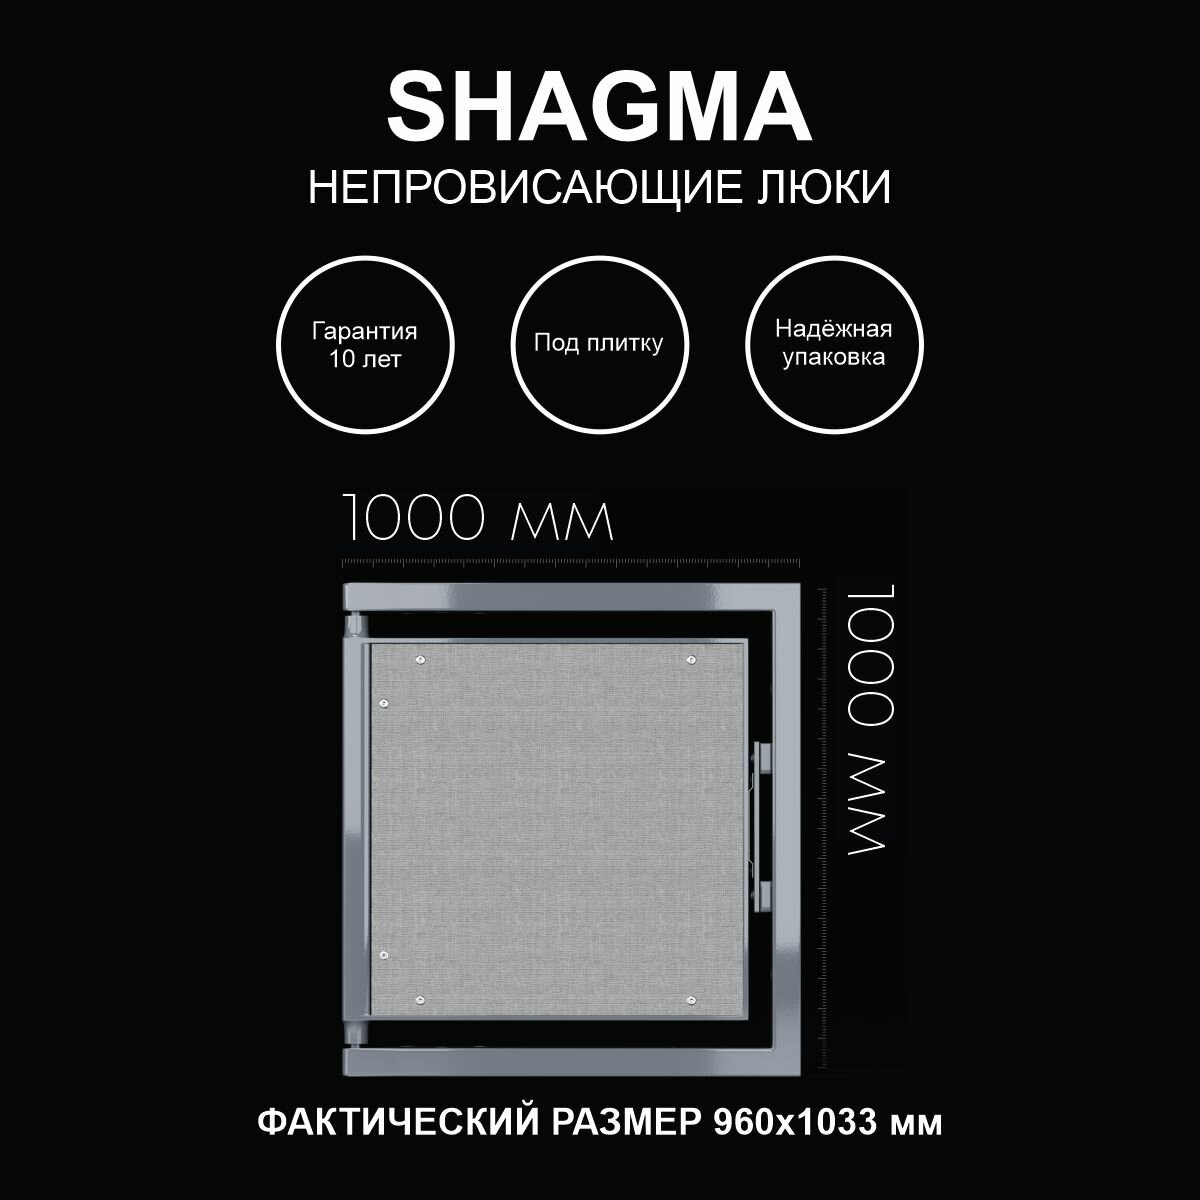 Люк ревизионный под плитку 1000х1000 мм одностворчатый сантехнический настенный фактический размер 960(ширина) х 1033(высота) мм SHAGMA